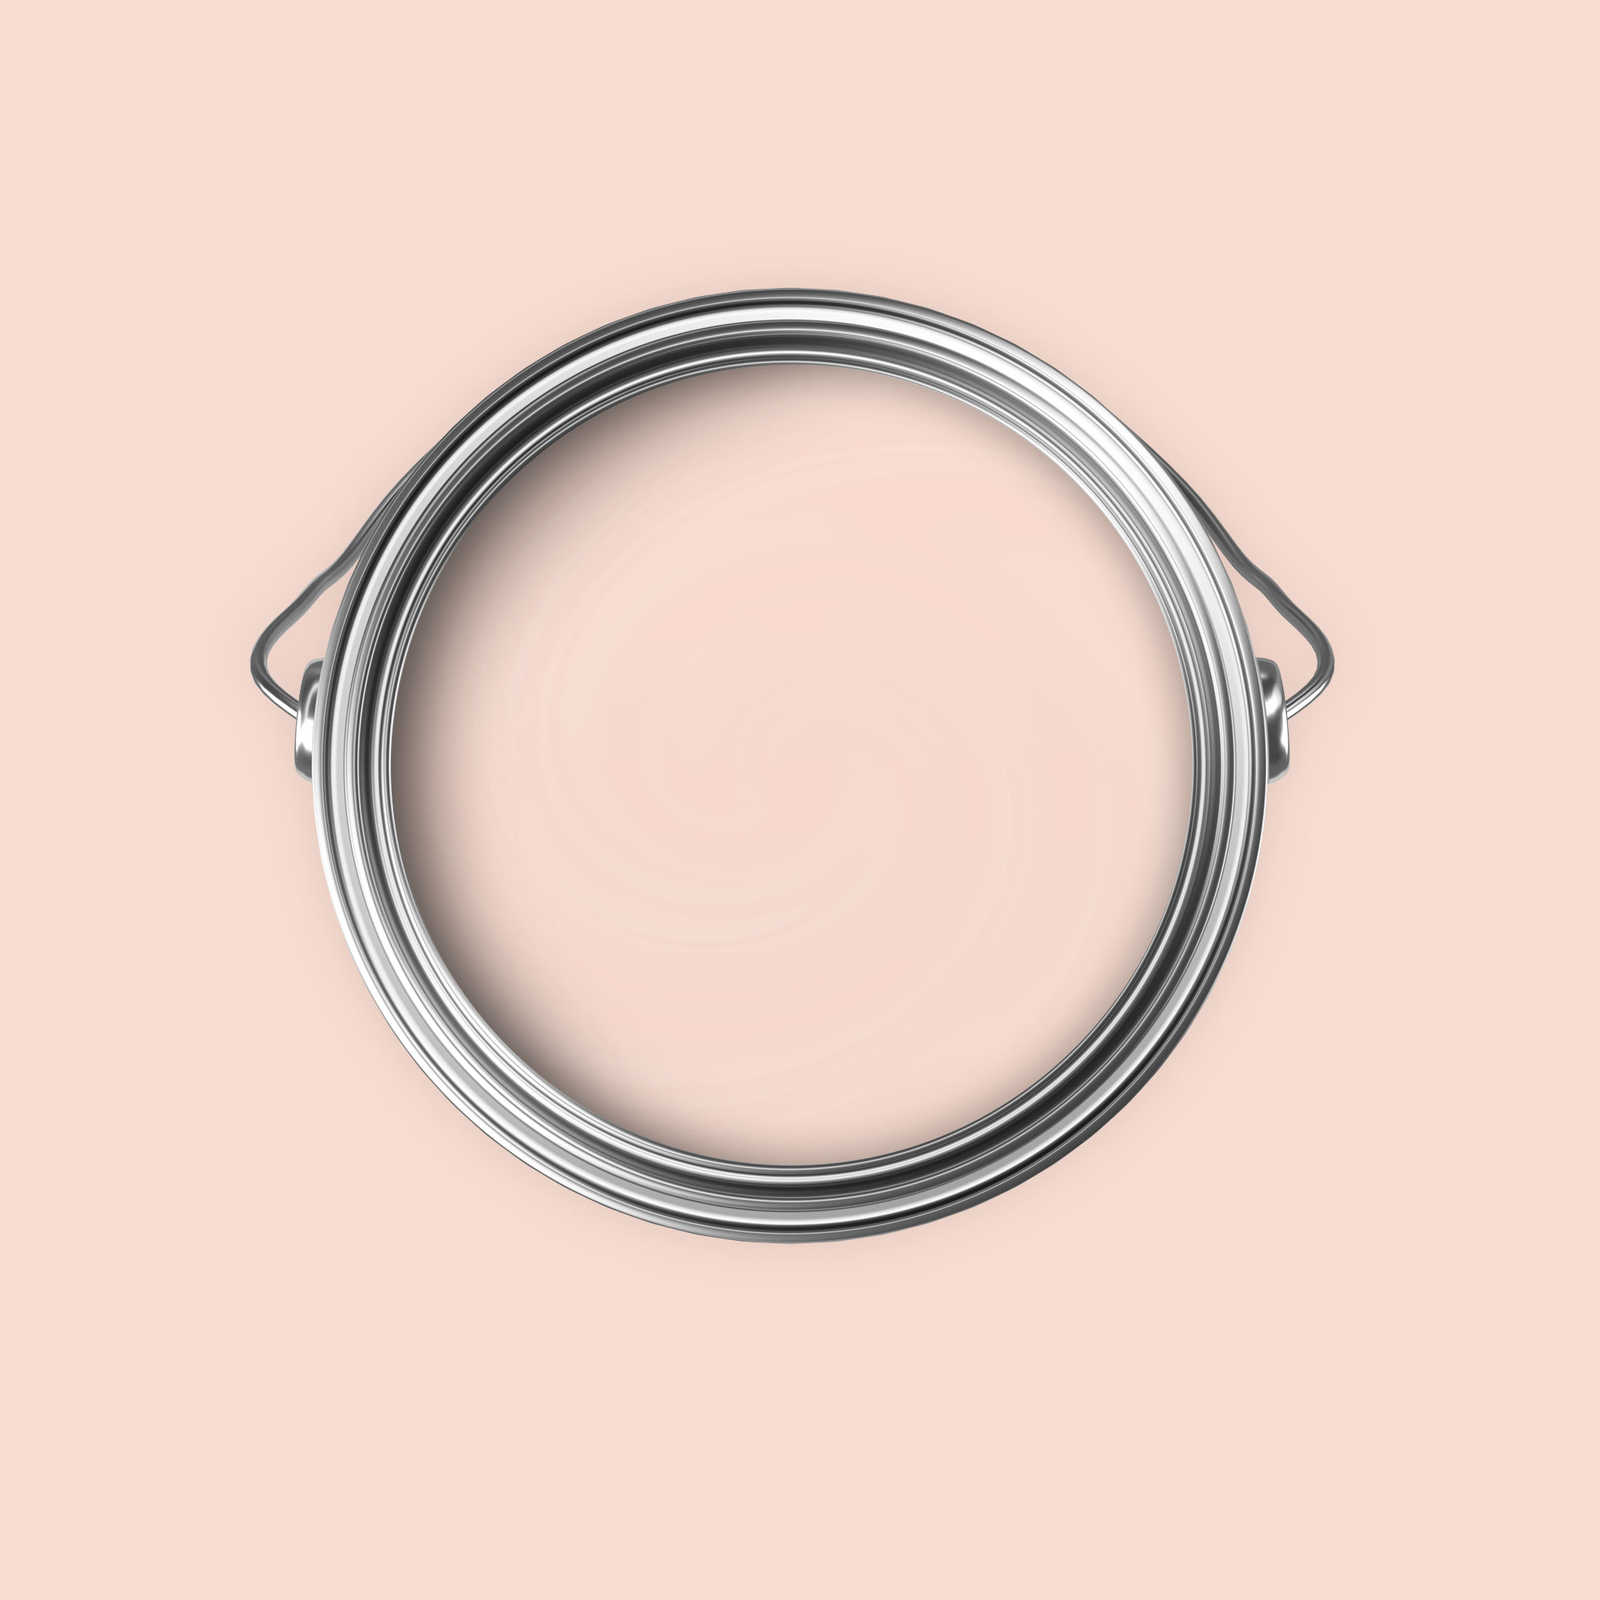             Pittura murale Premium rosa confetto »Luxury Lipstick« NW1000 – 5 litri
        